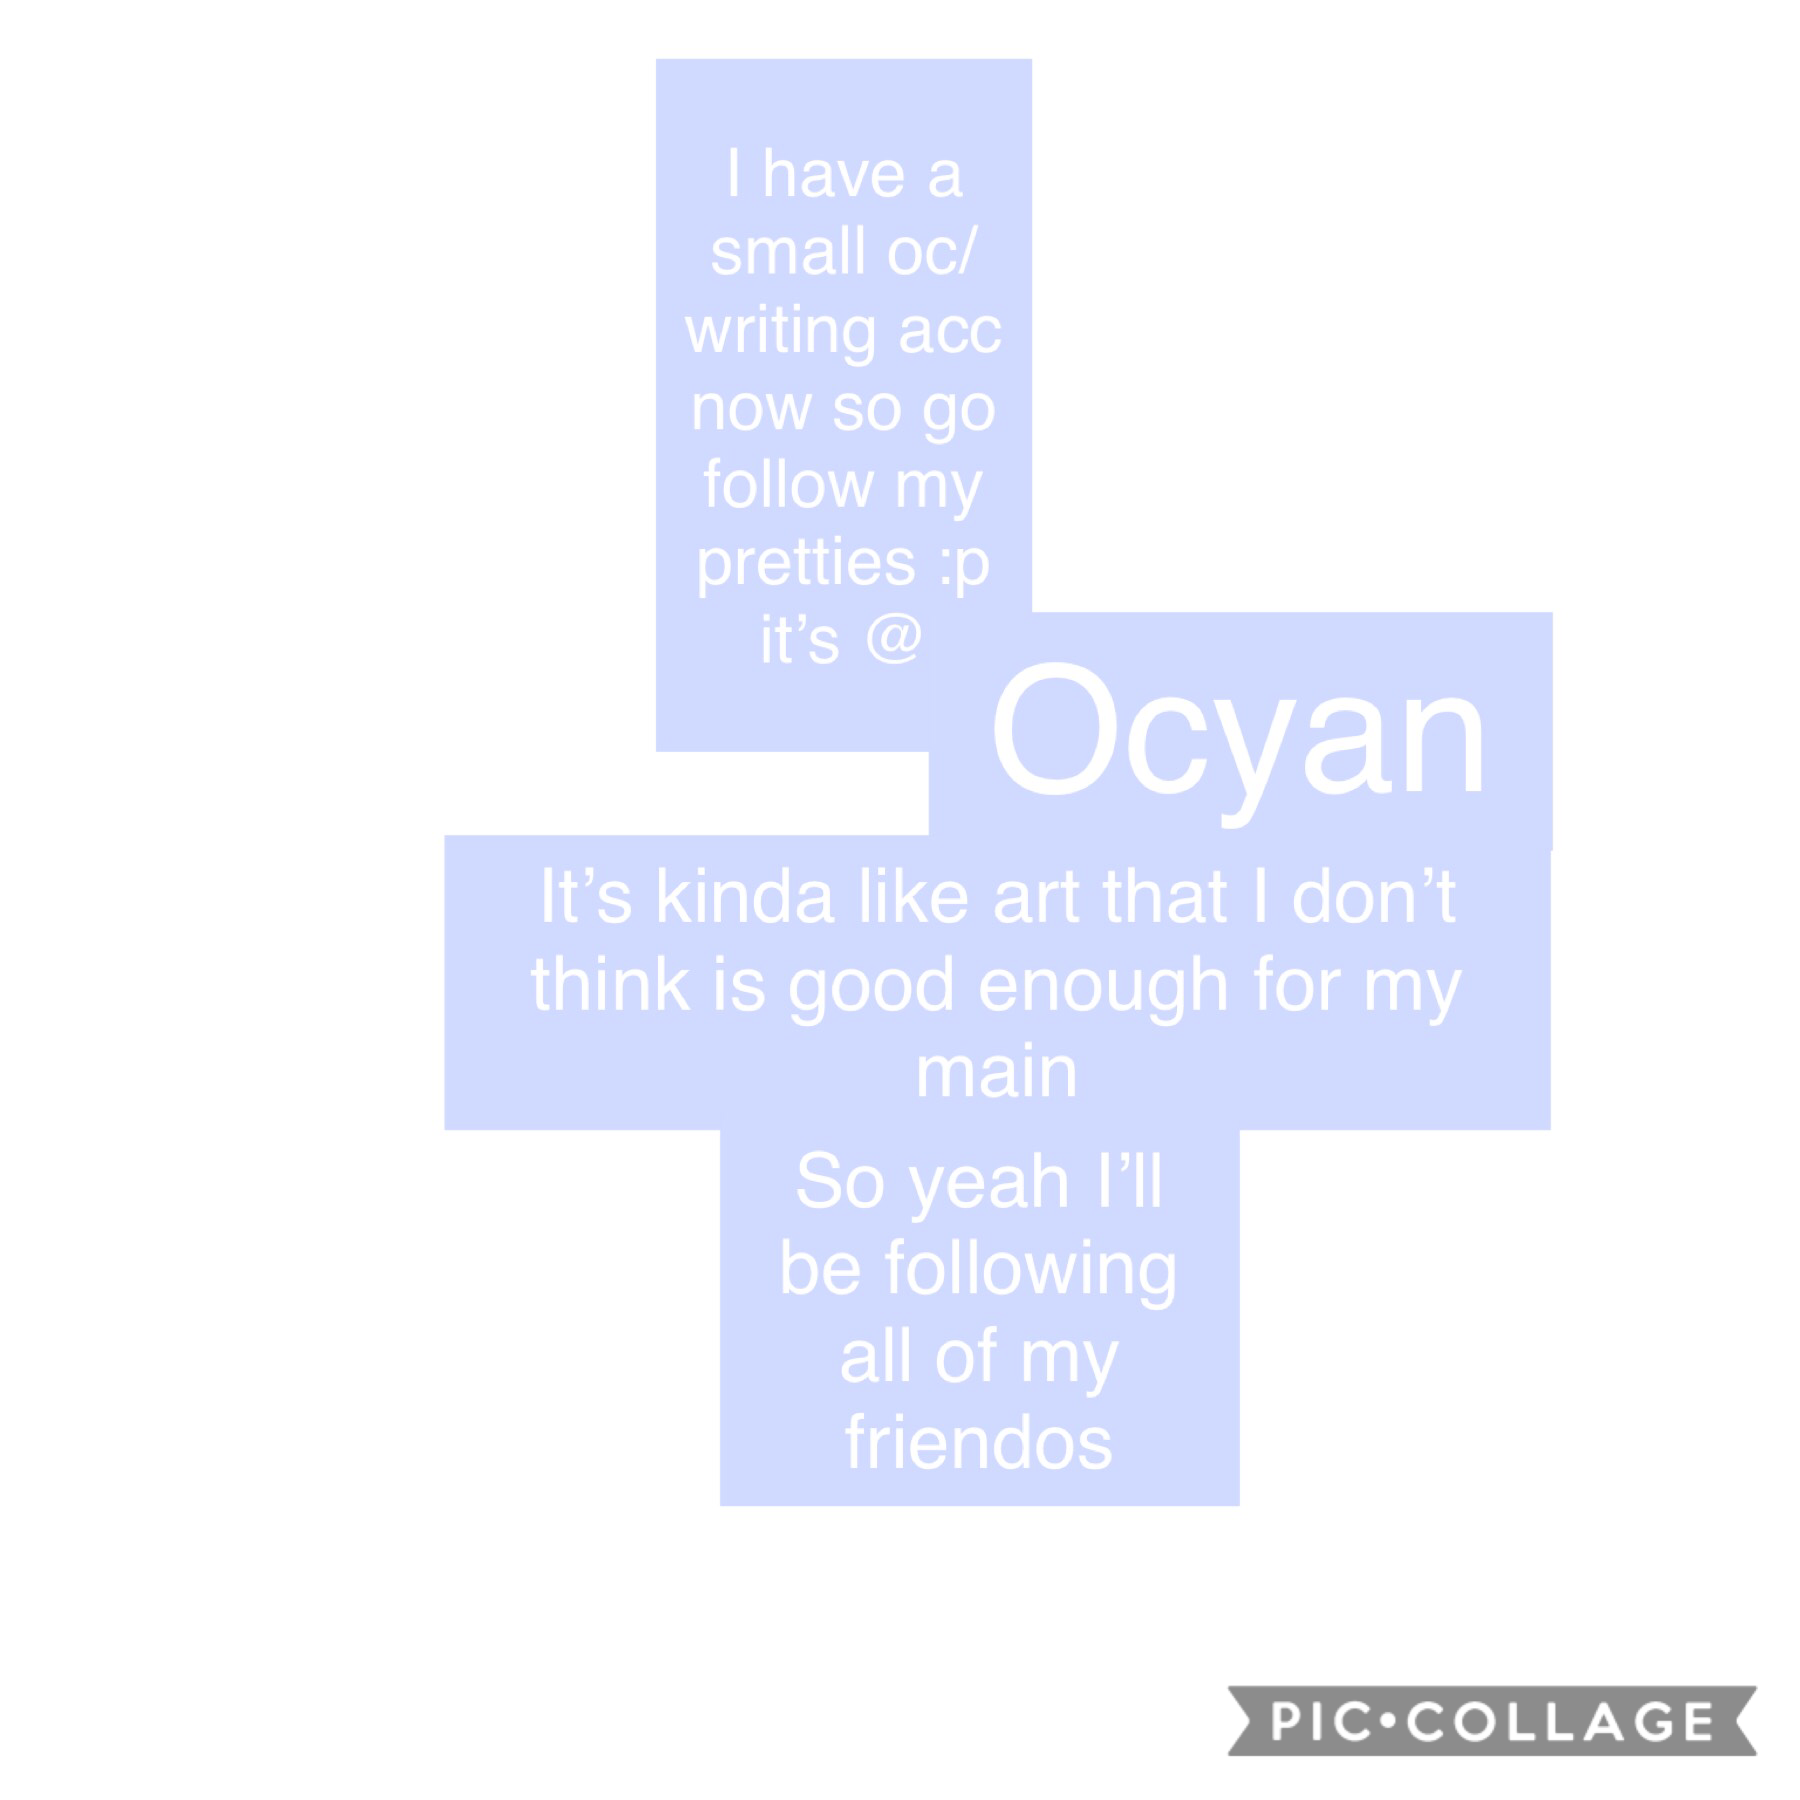 @ocyan